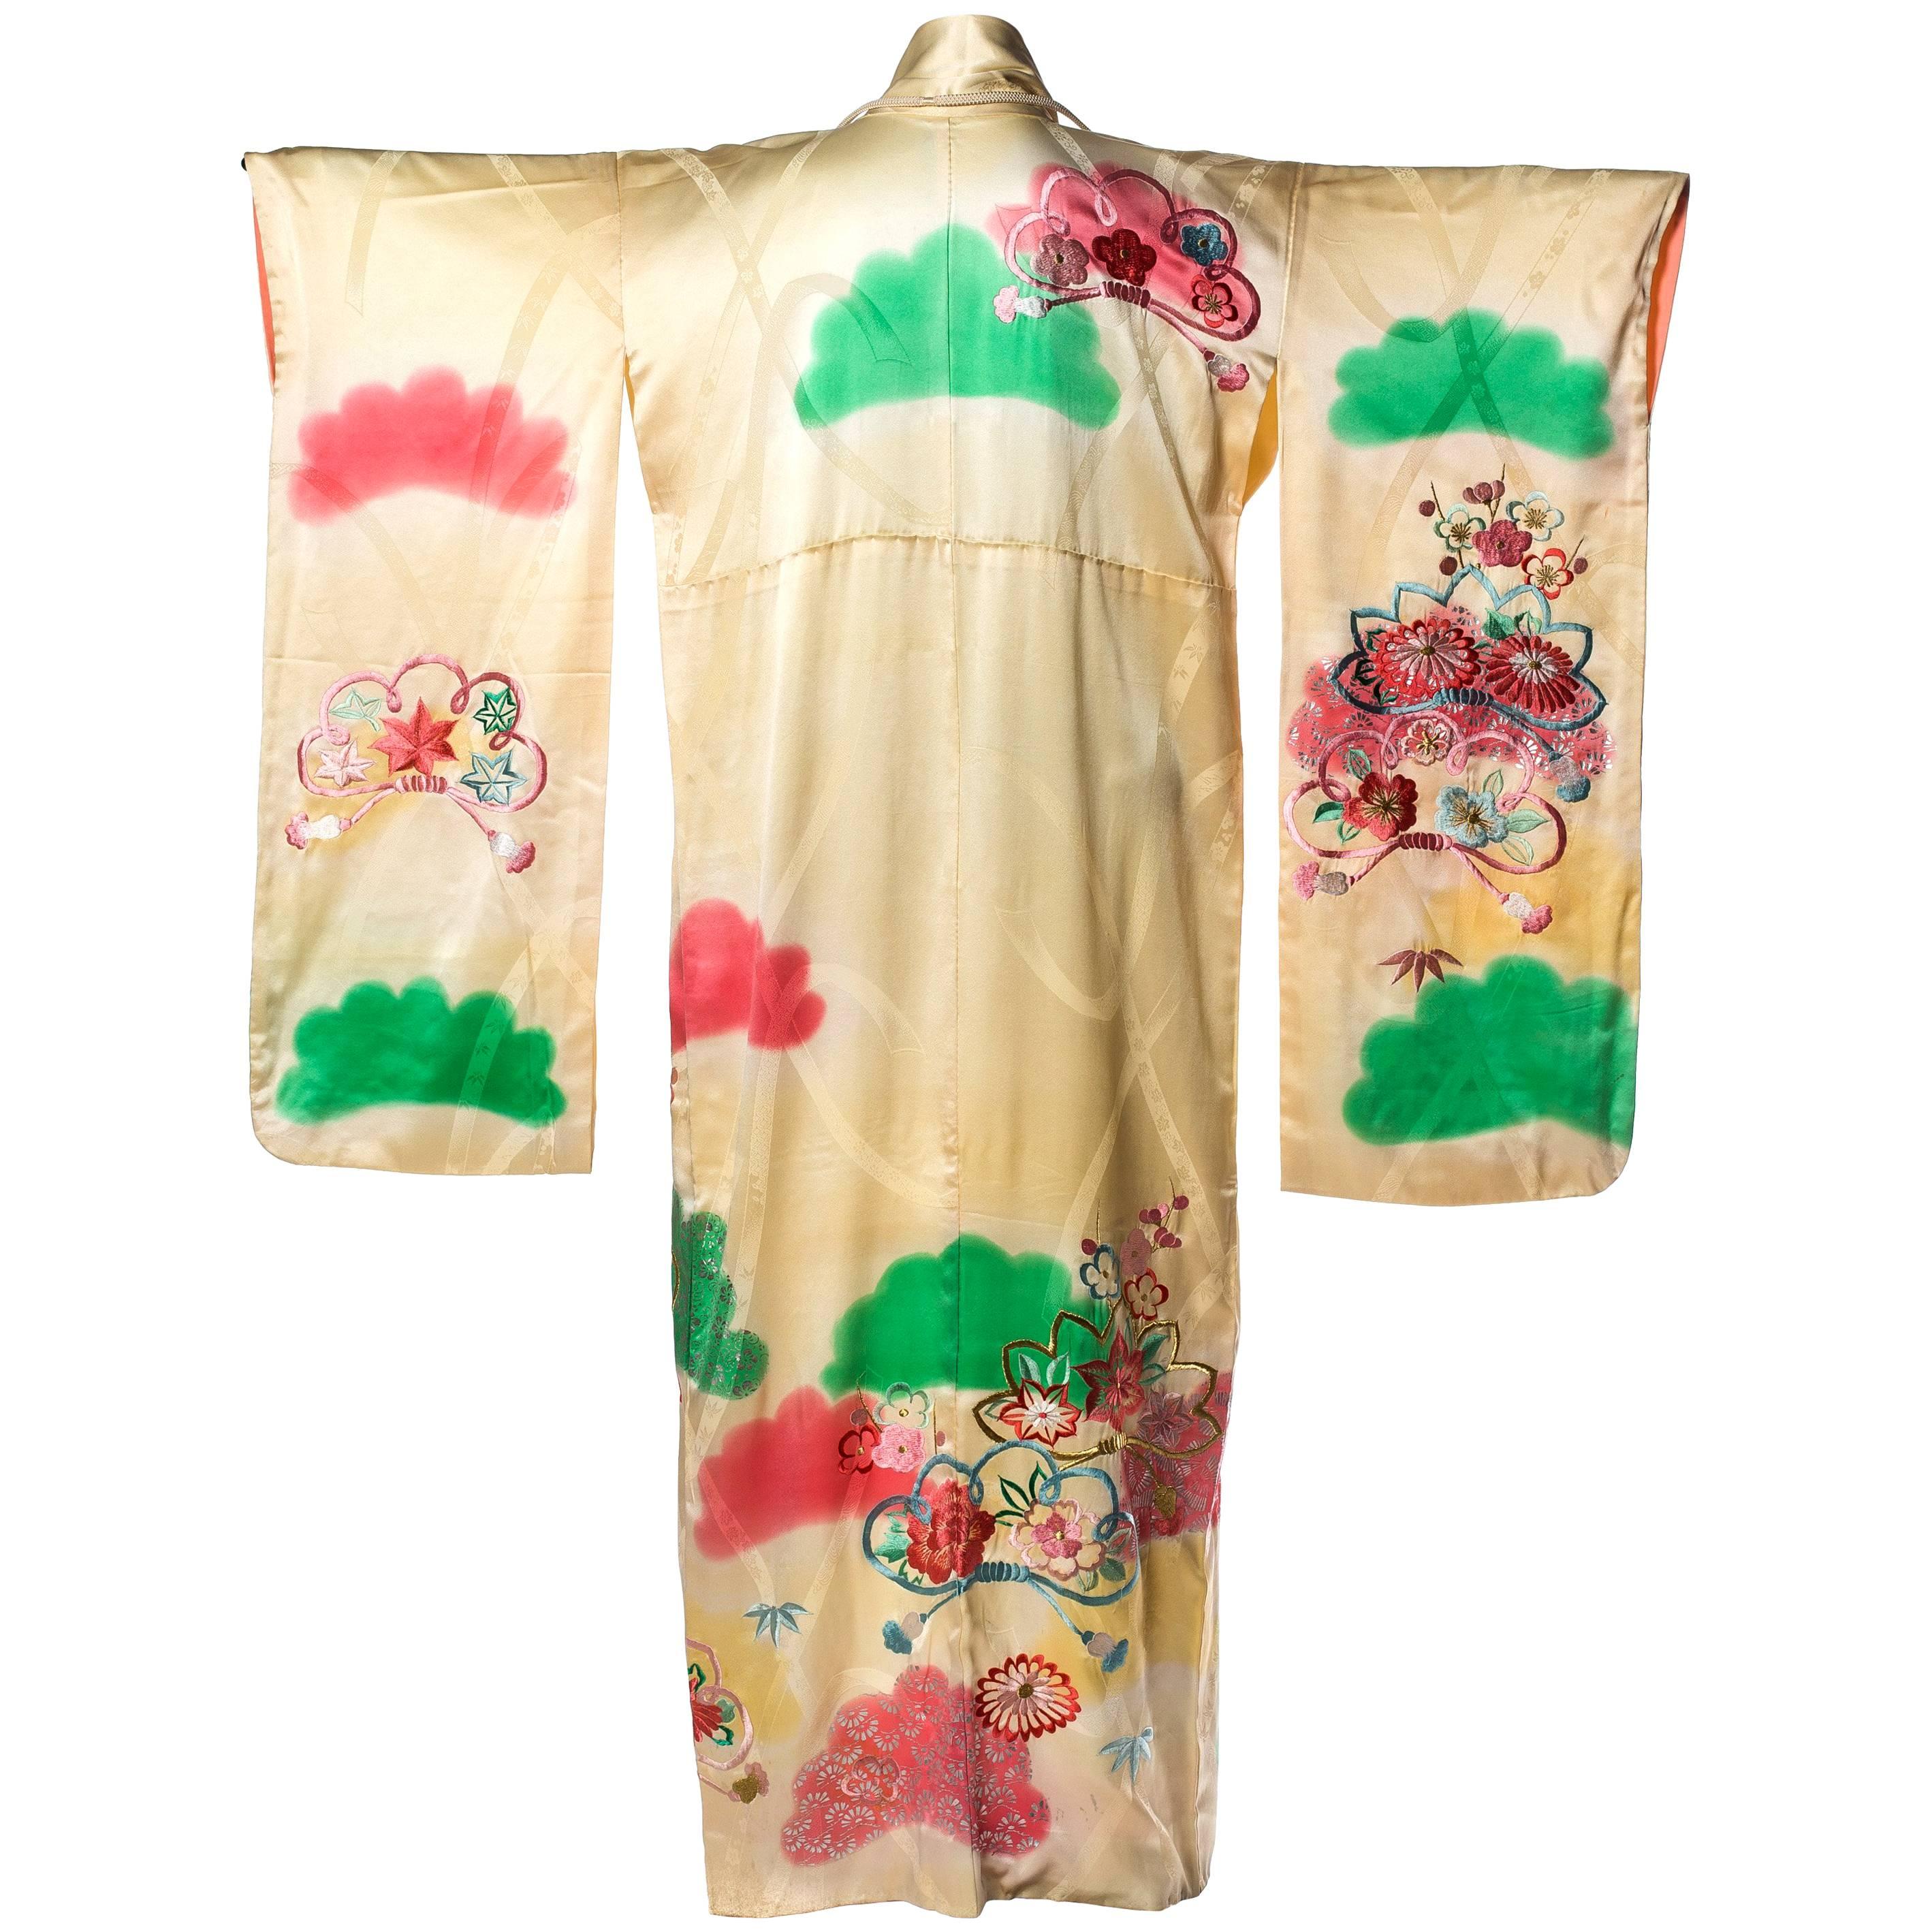 Kimono en rayonne et soie ivoire des années 1940 peint à la main avec broderie florale